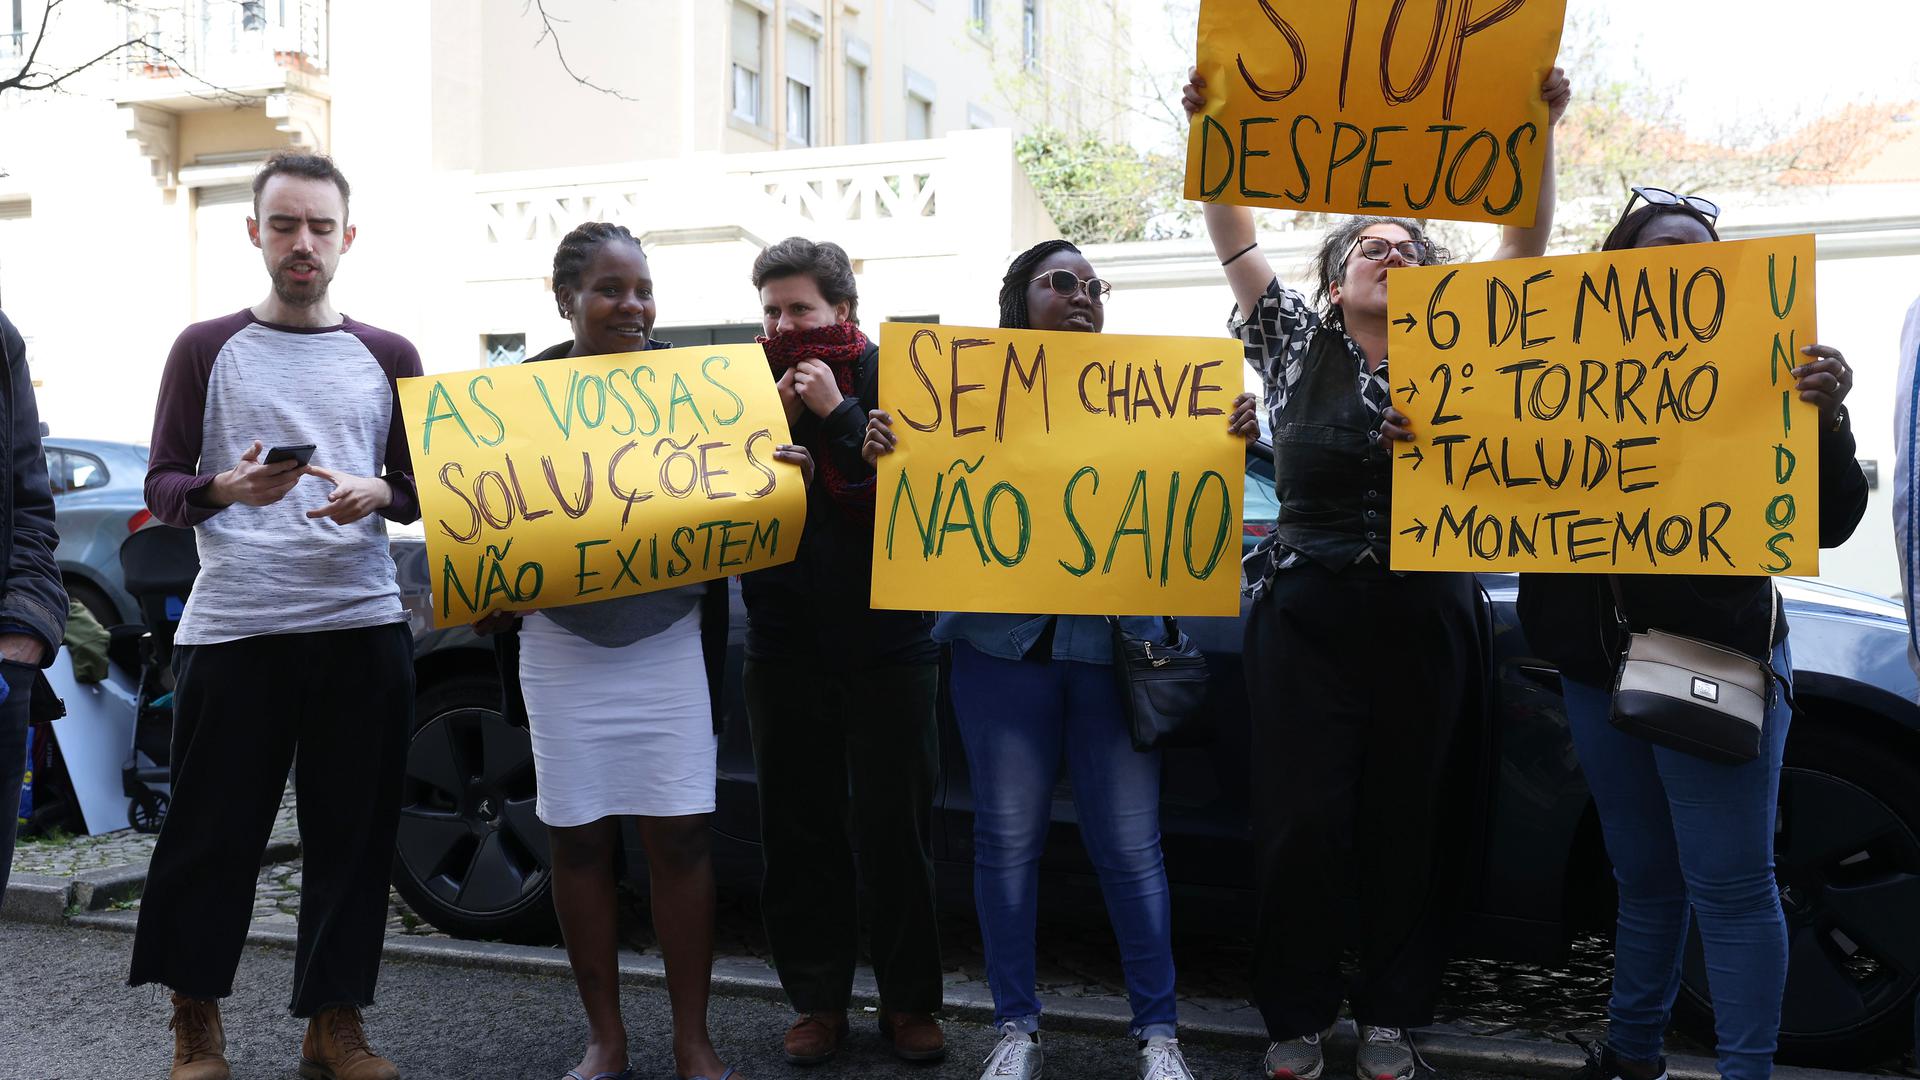 Representantes de vários bairros da Área Metropolitana de Lisboa, nomeadamente do Talude (concelho de Loures), do Segundo Torrão (Almada), do 6 de Maio (Amadora) e Montemor (Loures), manifestam-se à porta do Ministério da Habitação. 